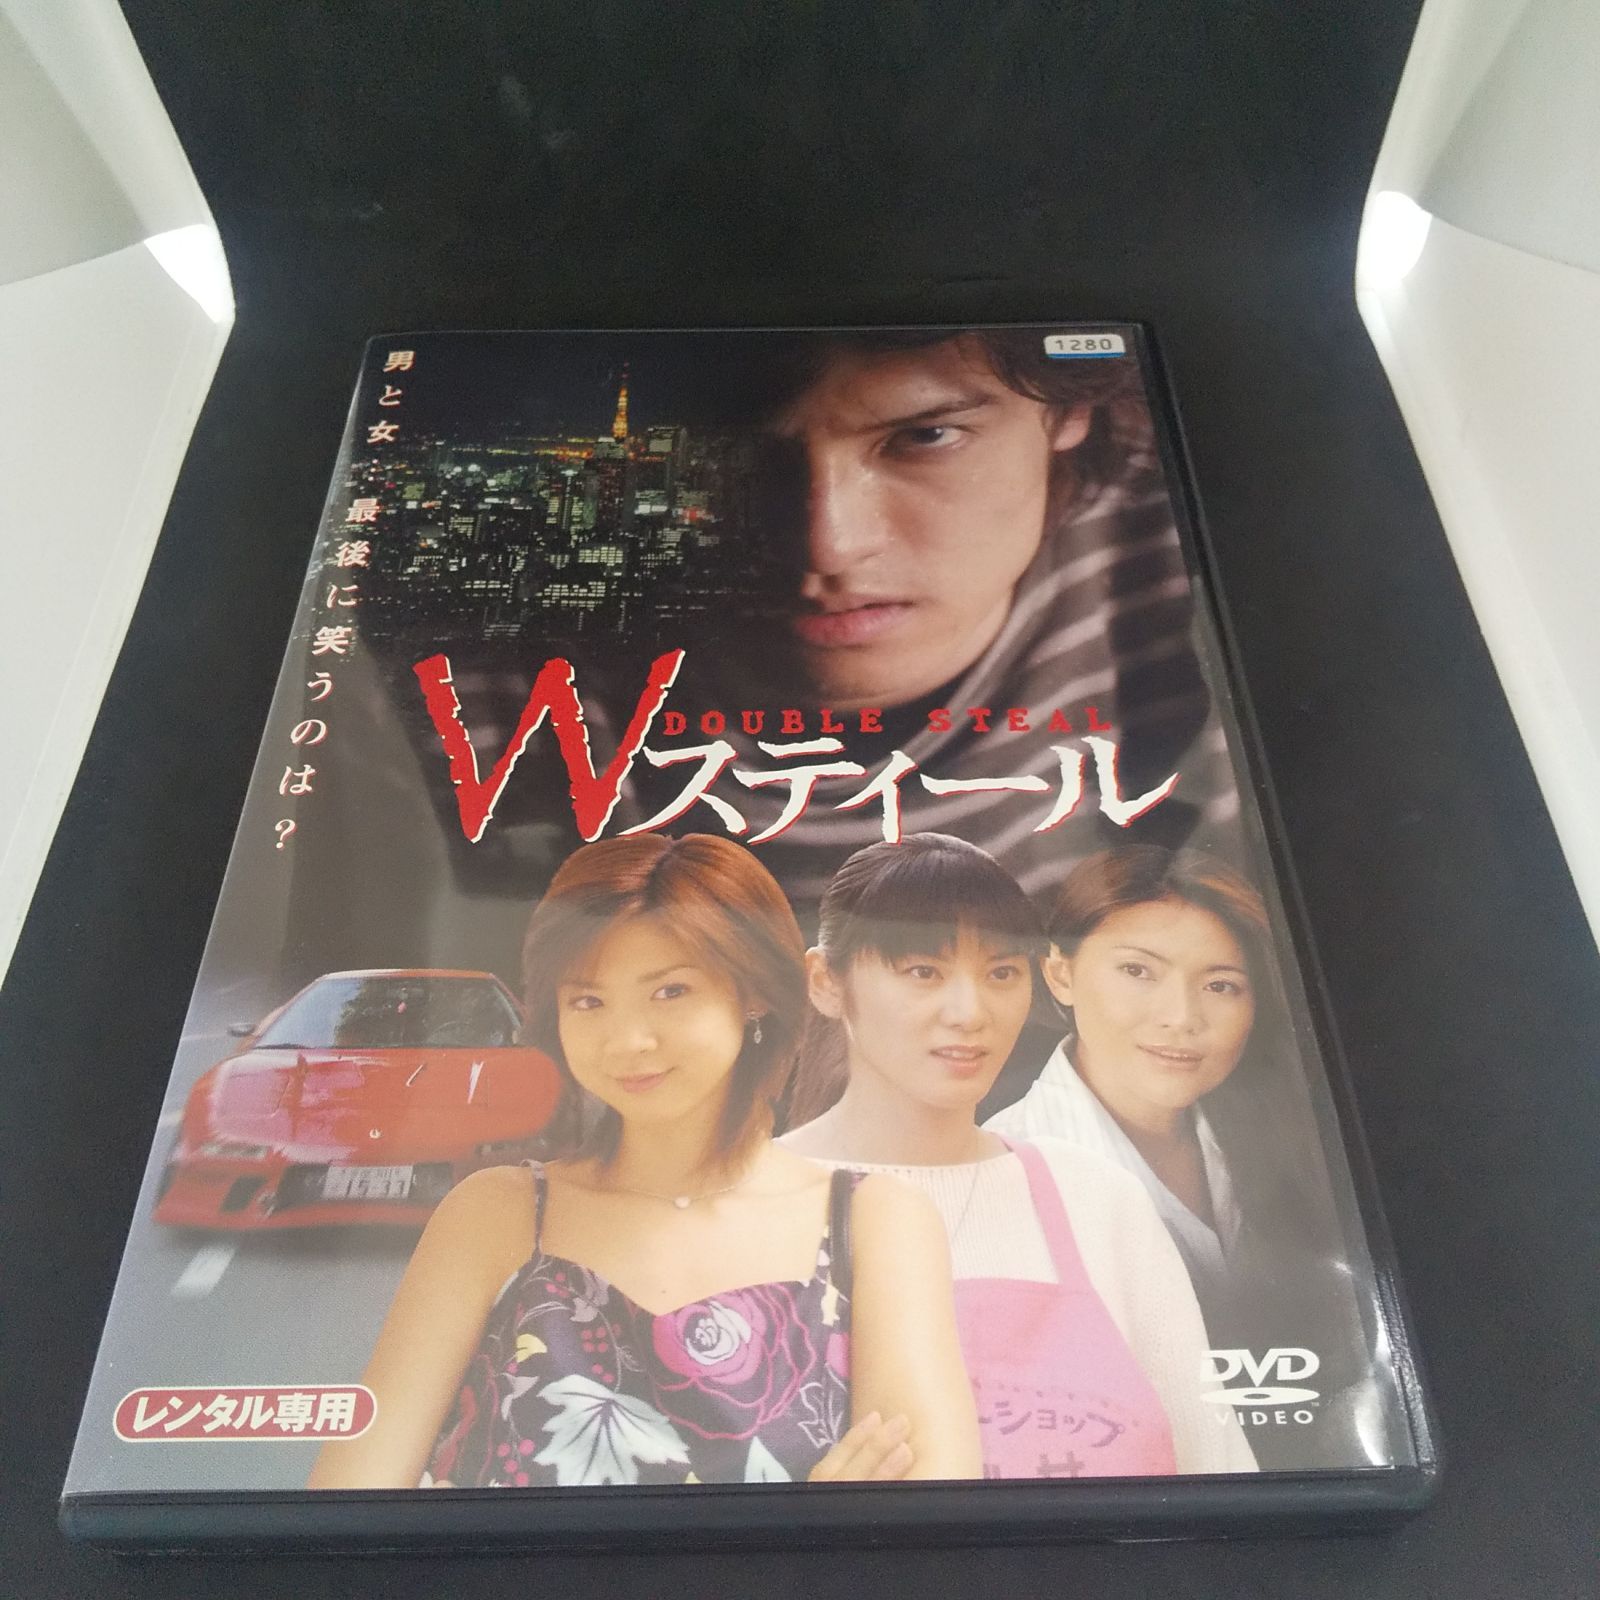 Wスティール DQUBLE STEAL レンタル専用 中古 DVD ケース付き - メルカリ